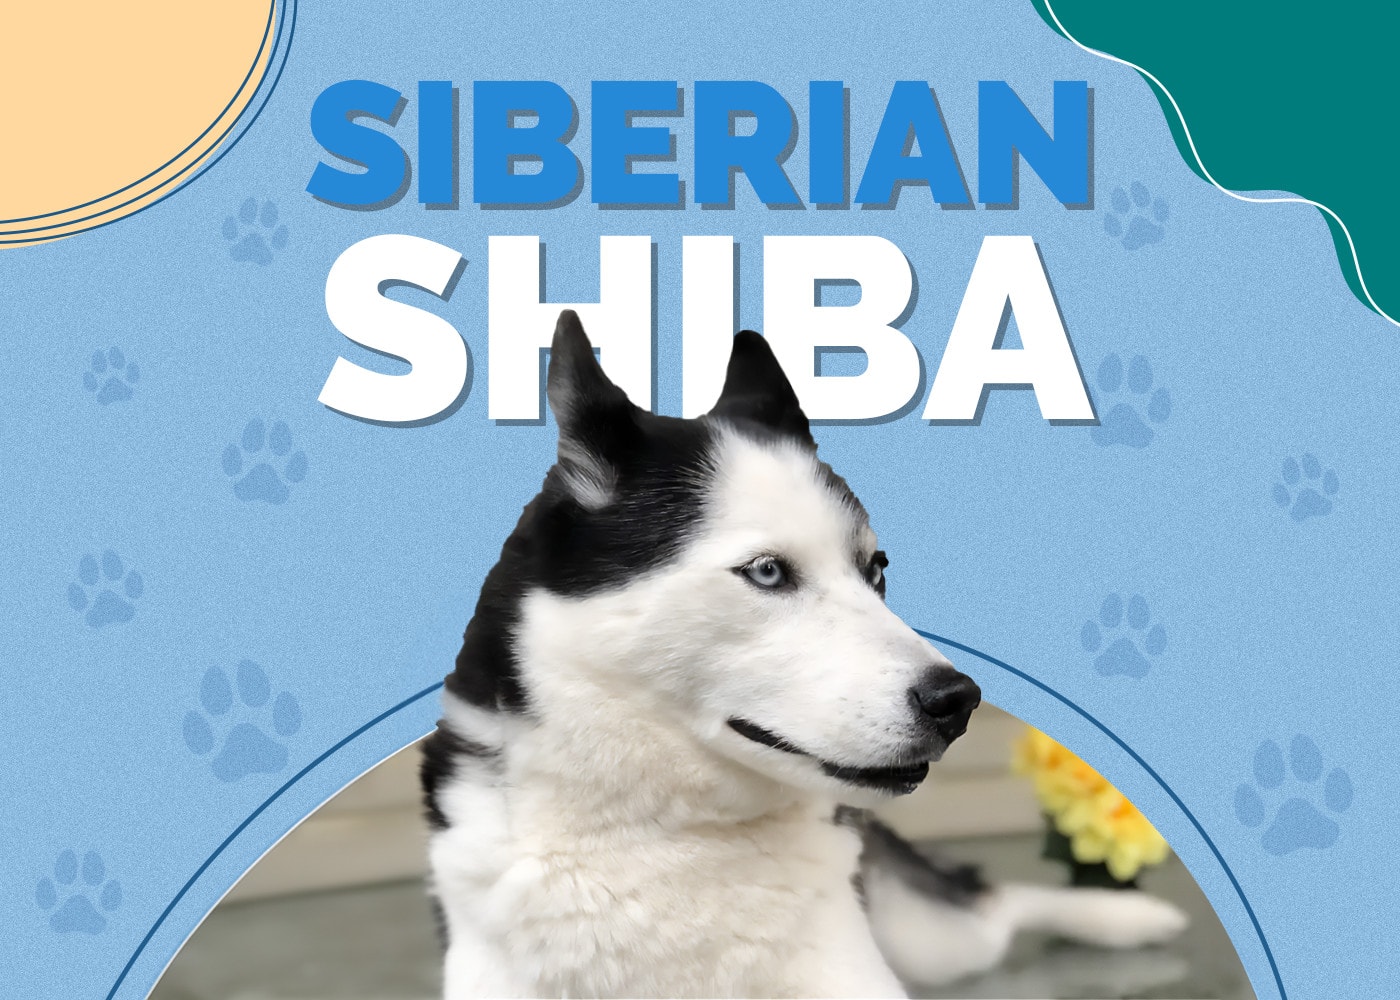 Siberian Shiba (Siberian Husky & Shiba Inu Mix)